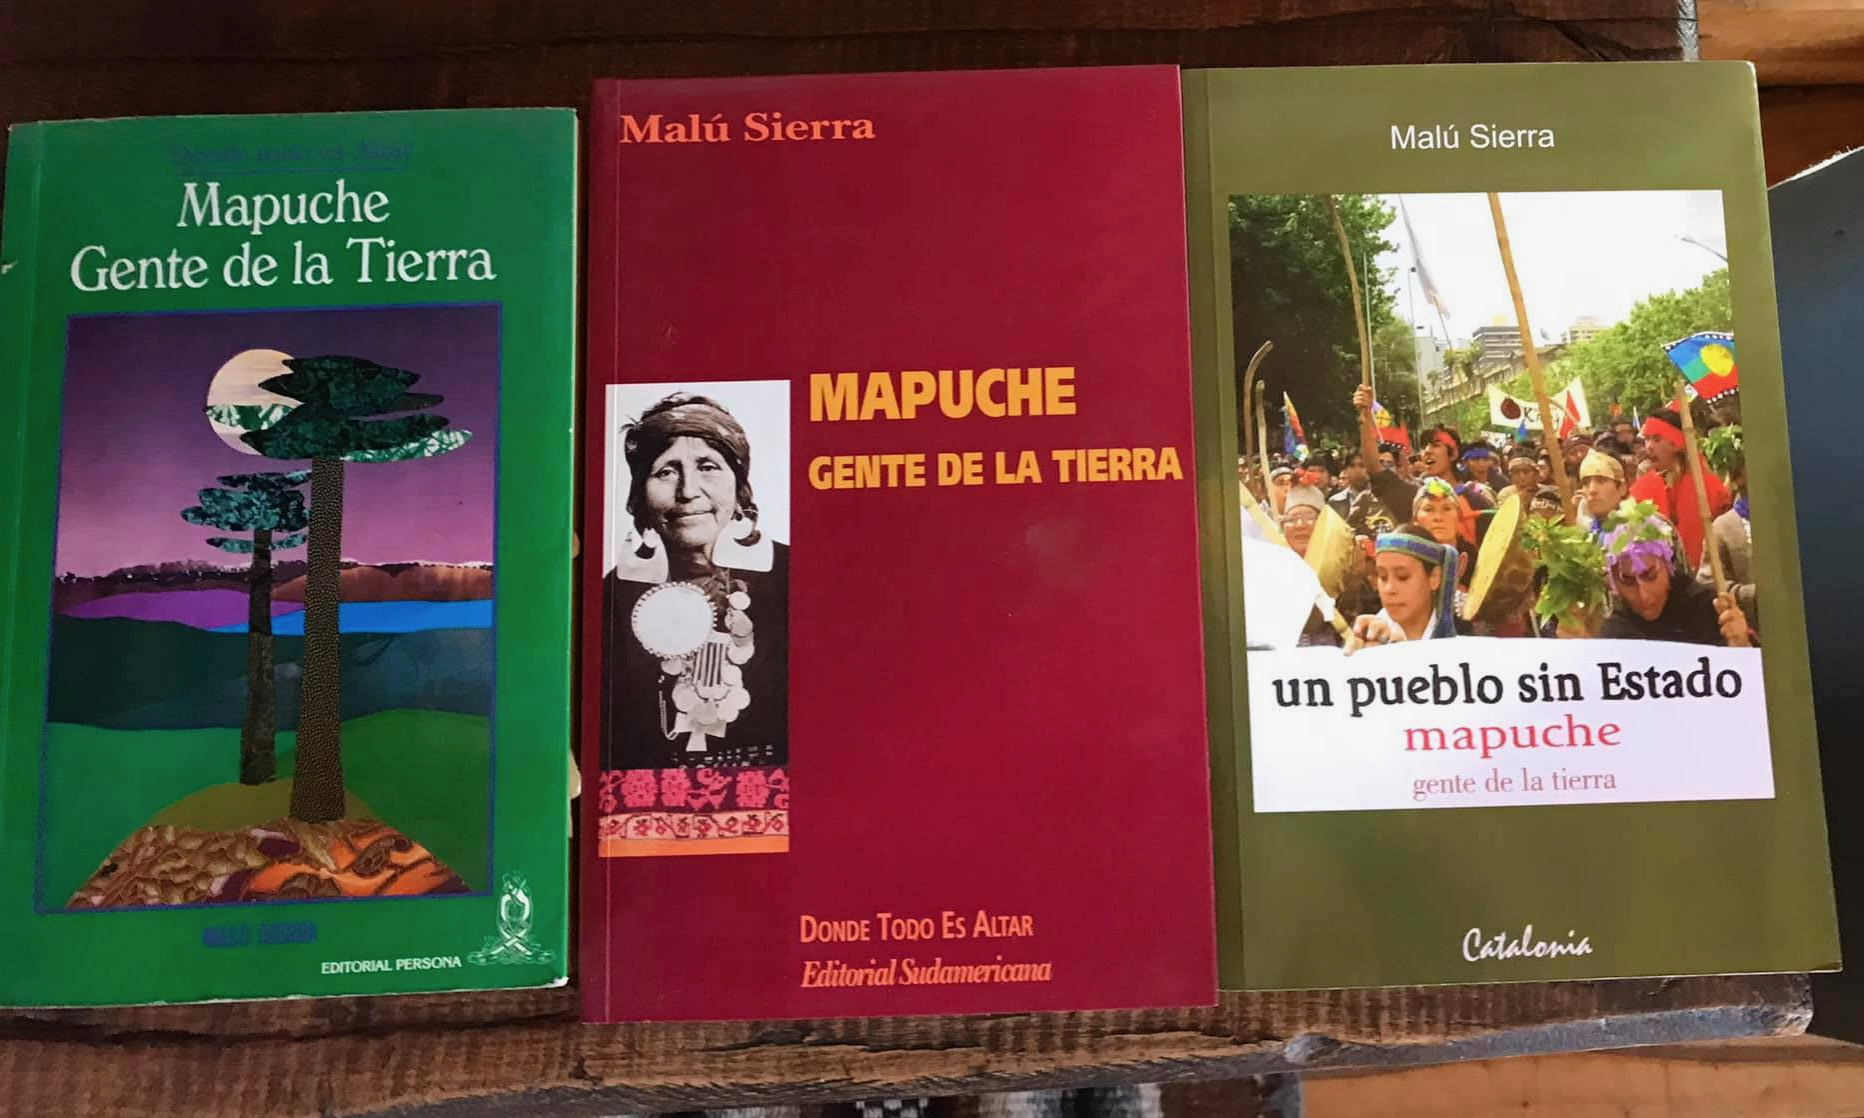 Malu Sierra is author of the books "Mapuche Gente de la Tierra" and "Un Pueblo sin Estado."